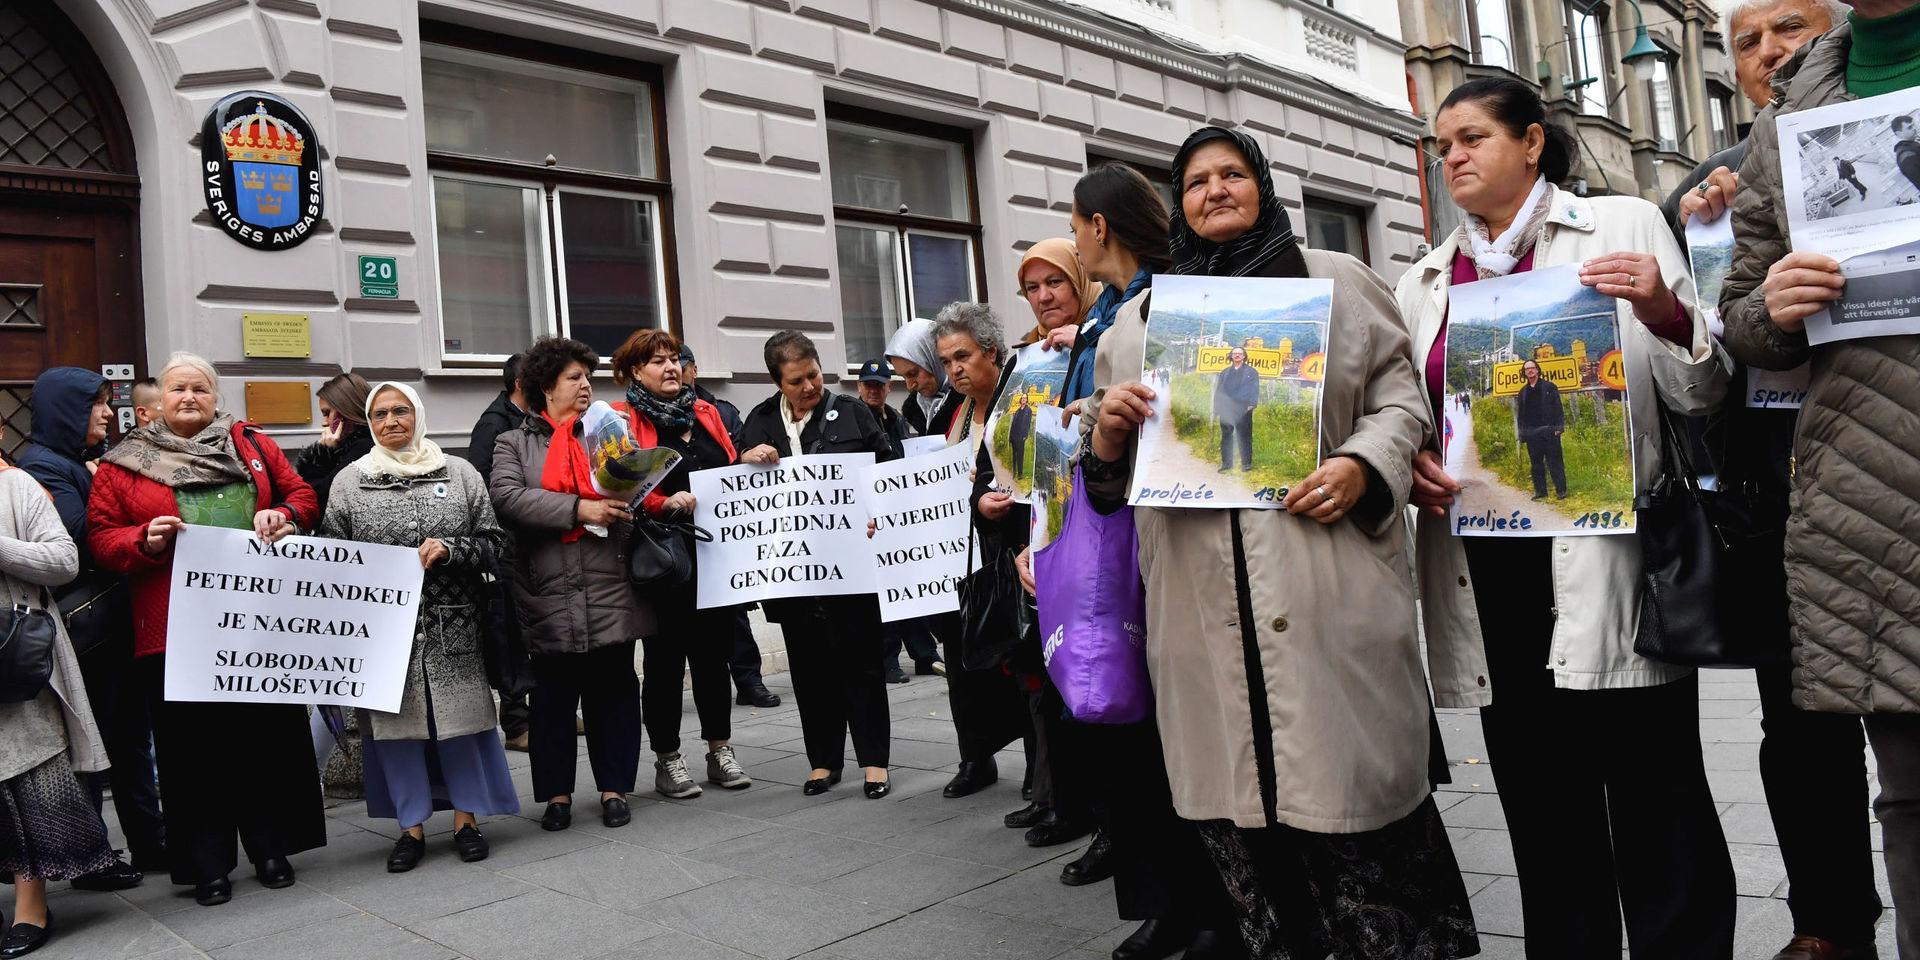 Ett 20-tal personer protesterade utanför Sveriges ambassad i Sarajevo mot att Peter Handke tilldelas 2019 års Nobelpris i litteratur.